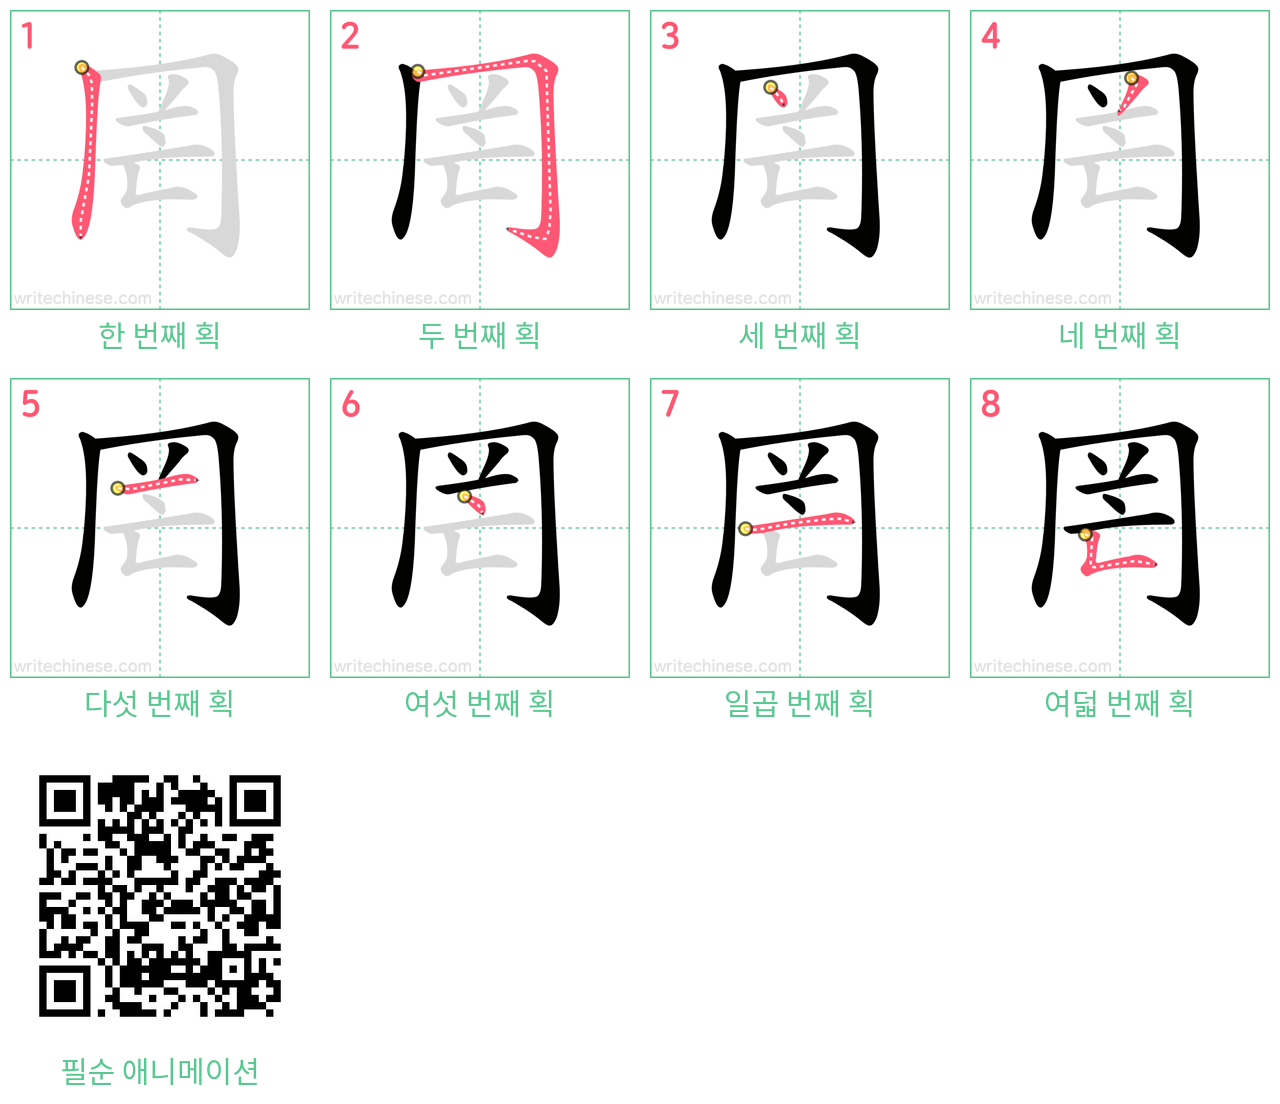 罔 step-by-step stroke order diagrams